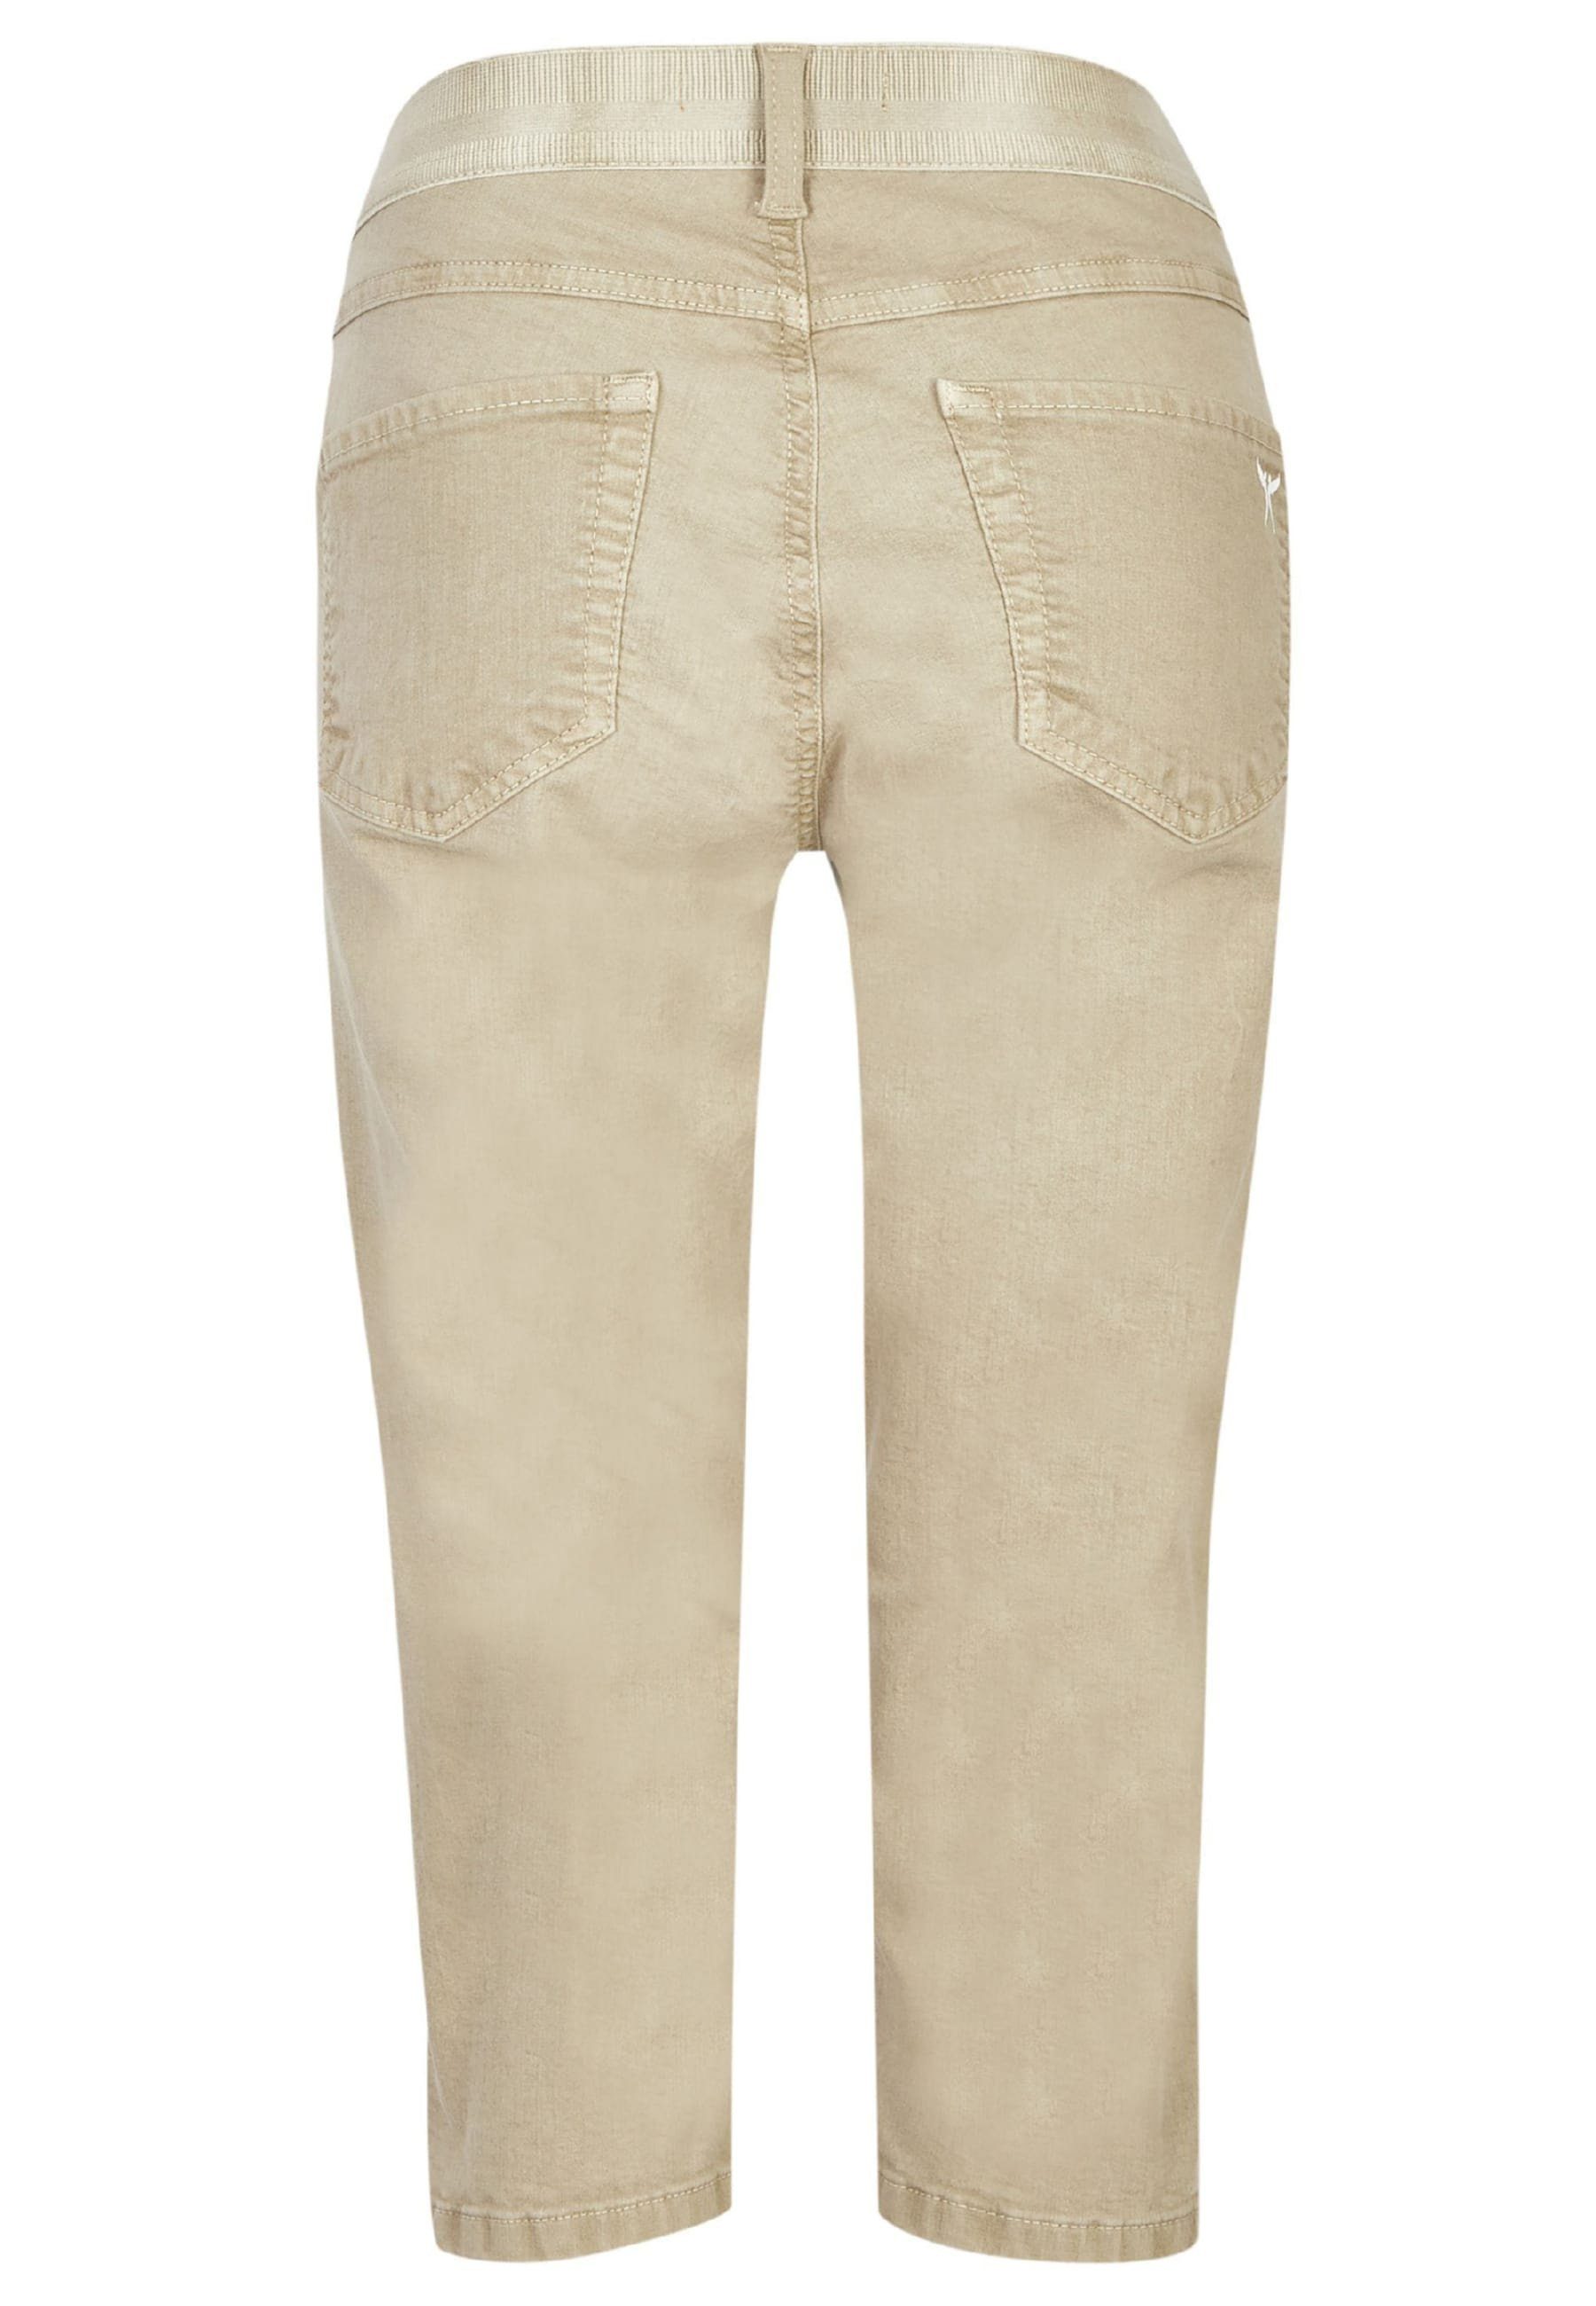 Denim ANGELS Jeans Capri Coloured Label-Applikationen khaki mit Slim-fit-Jeans OSFA mit